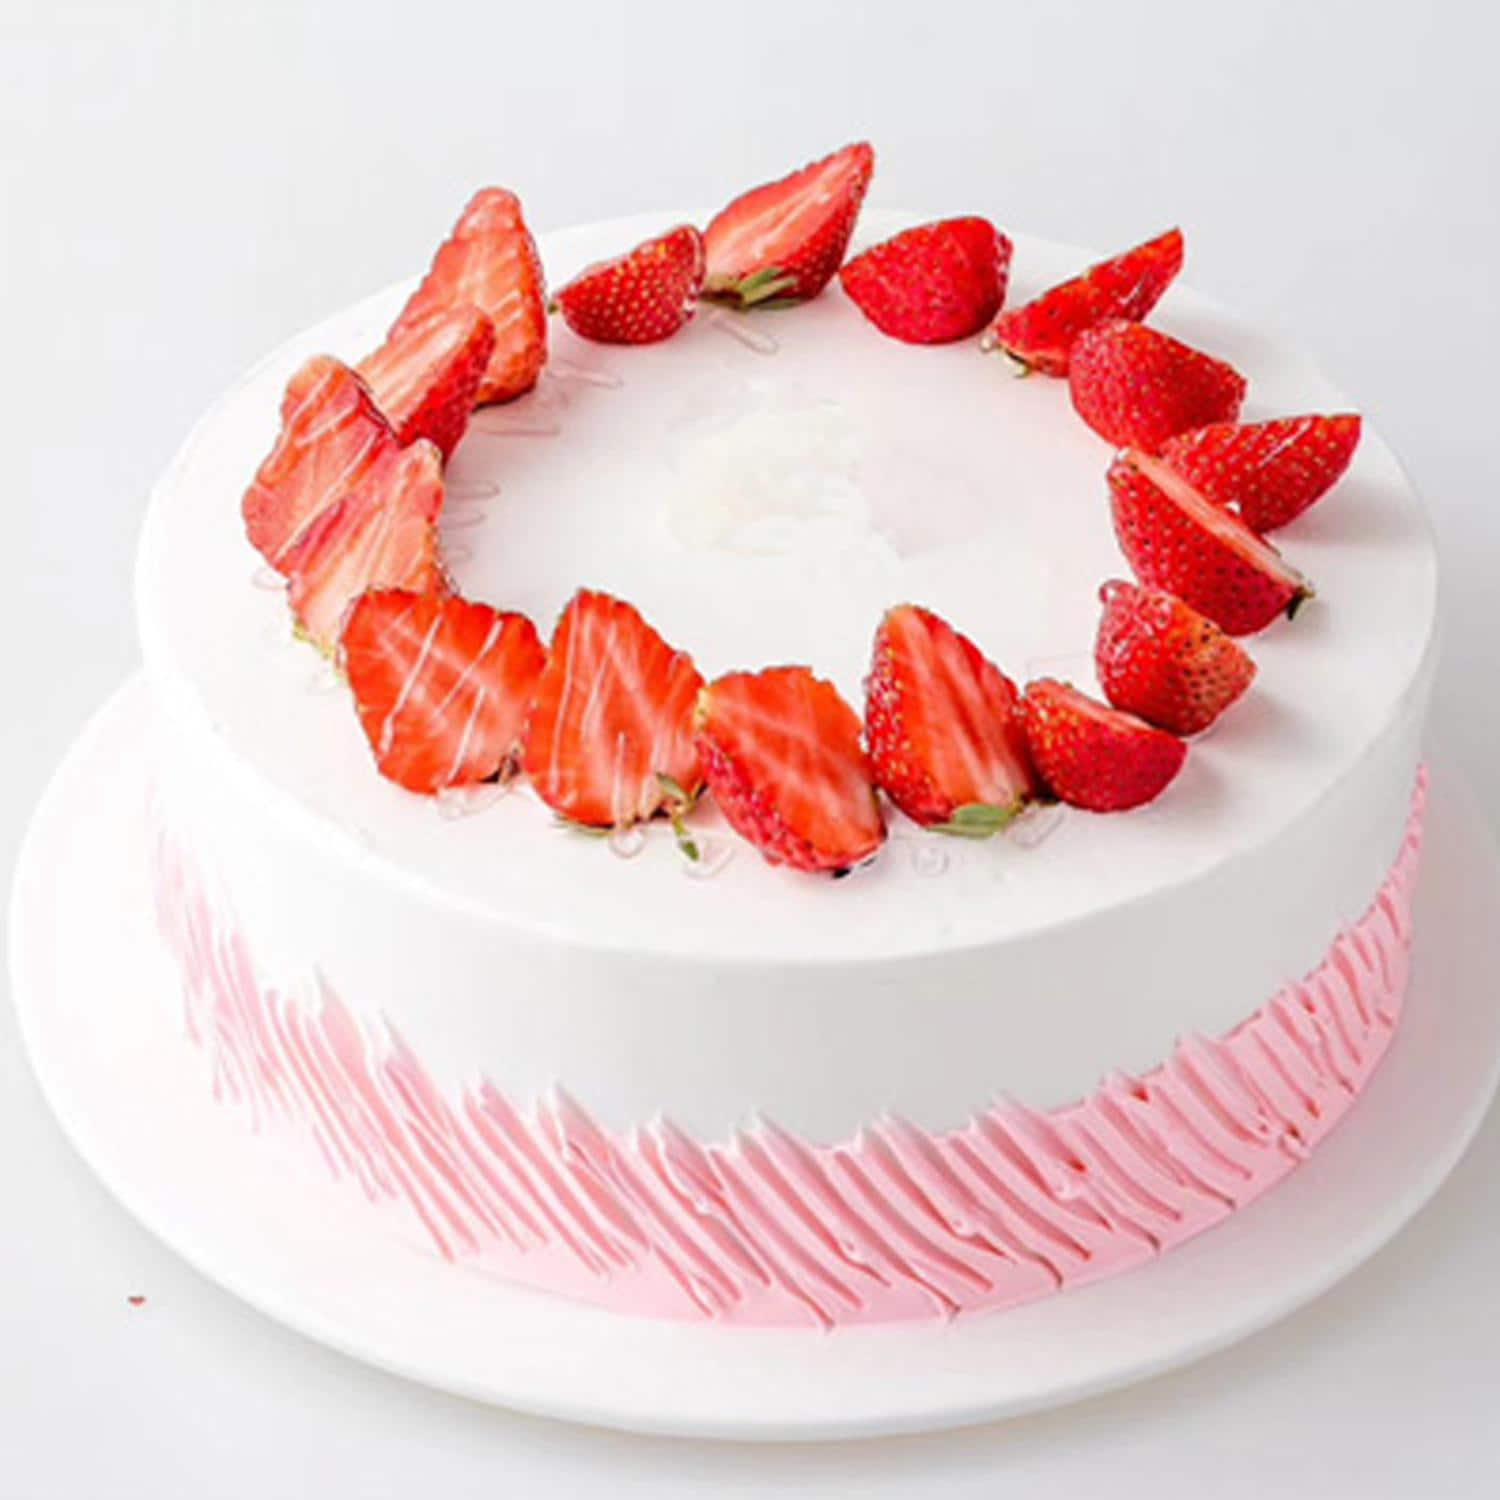 Wonderful Cake With Fresh Strawberries | Fuzz and Buzz